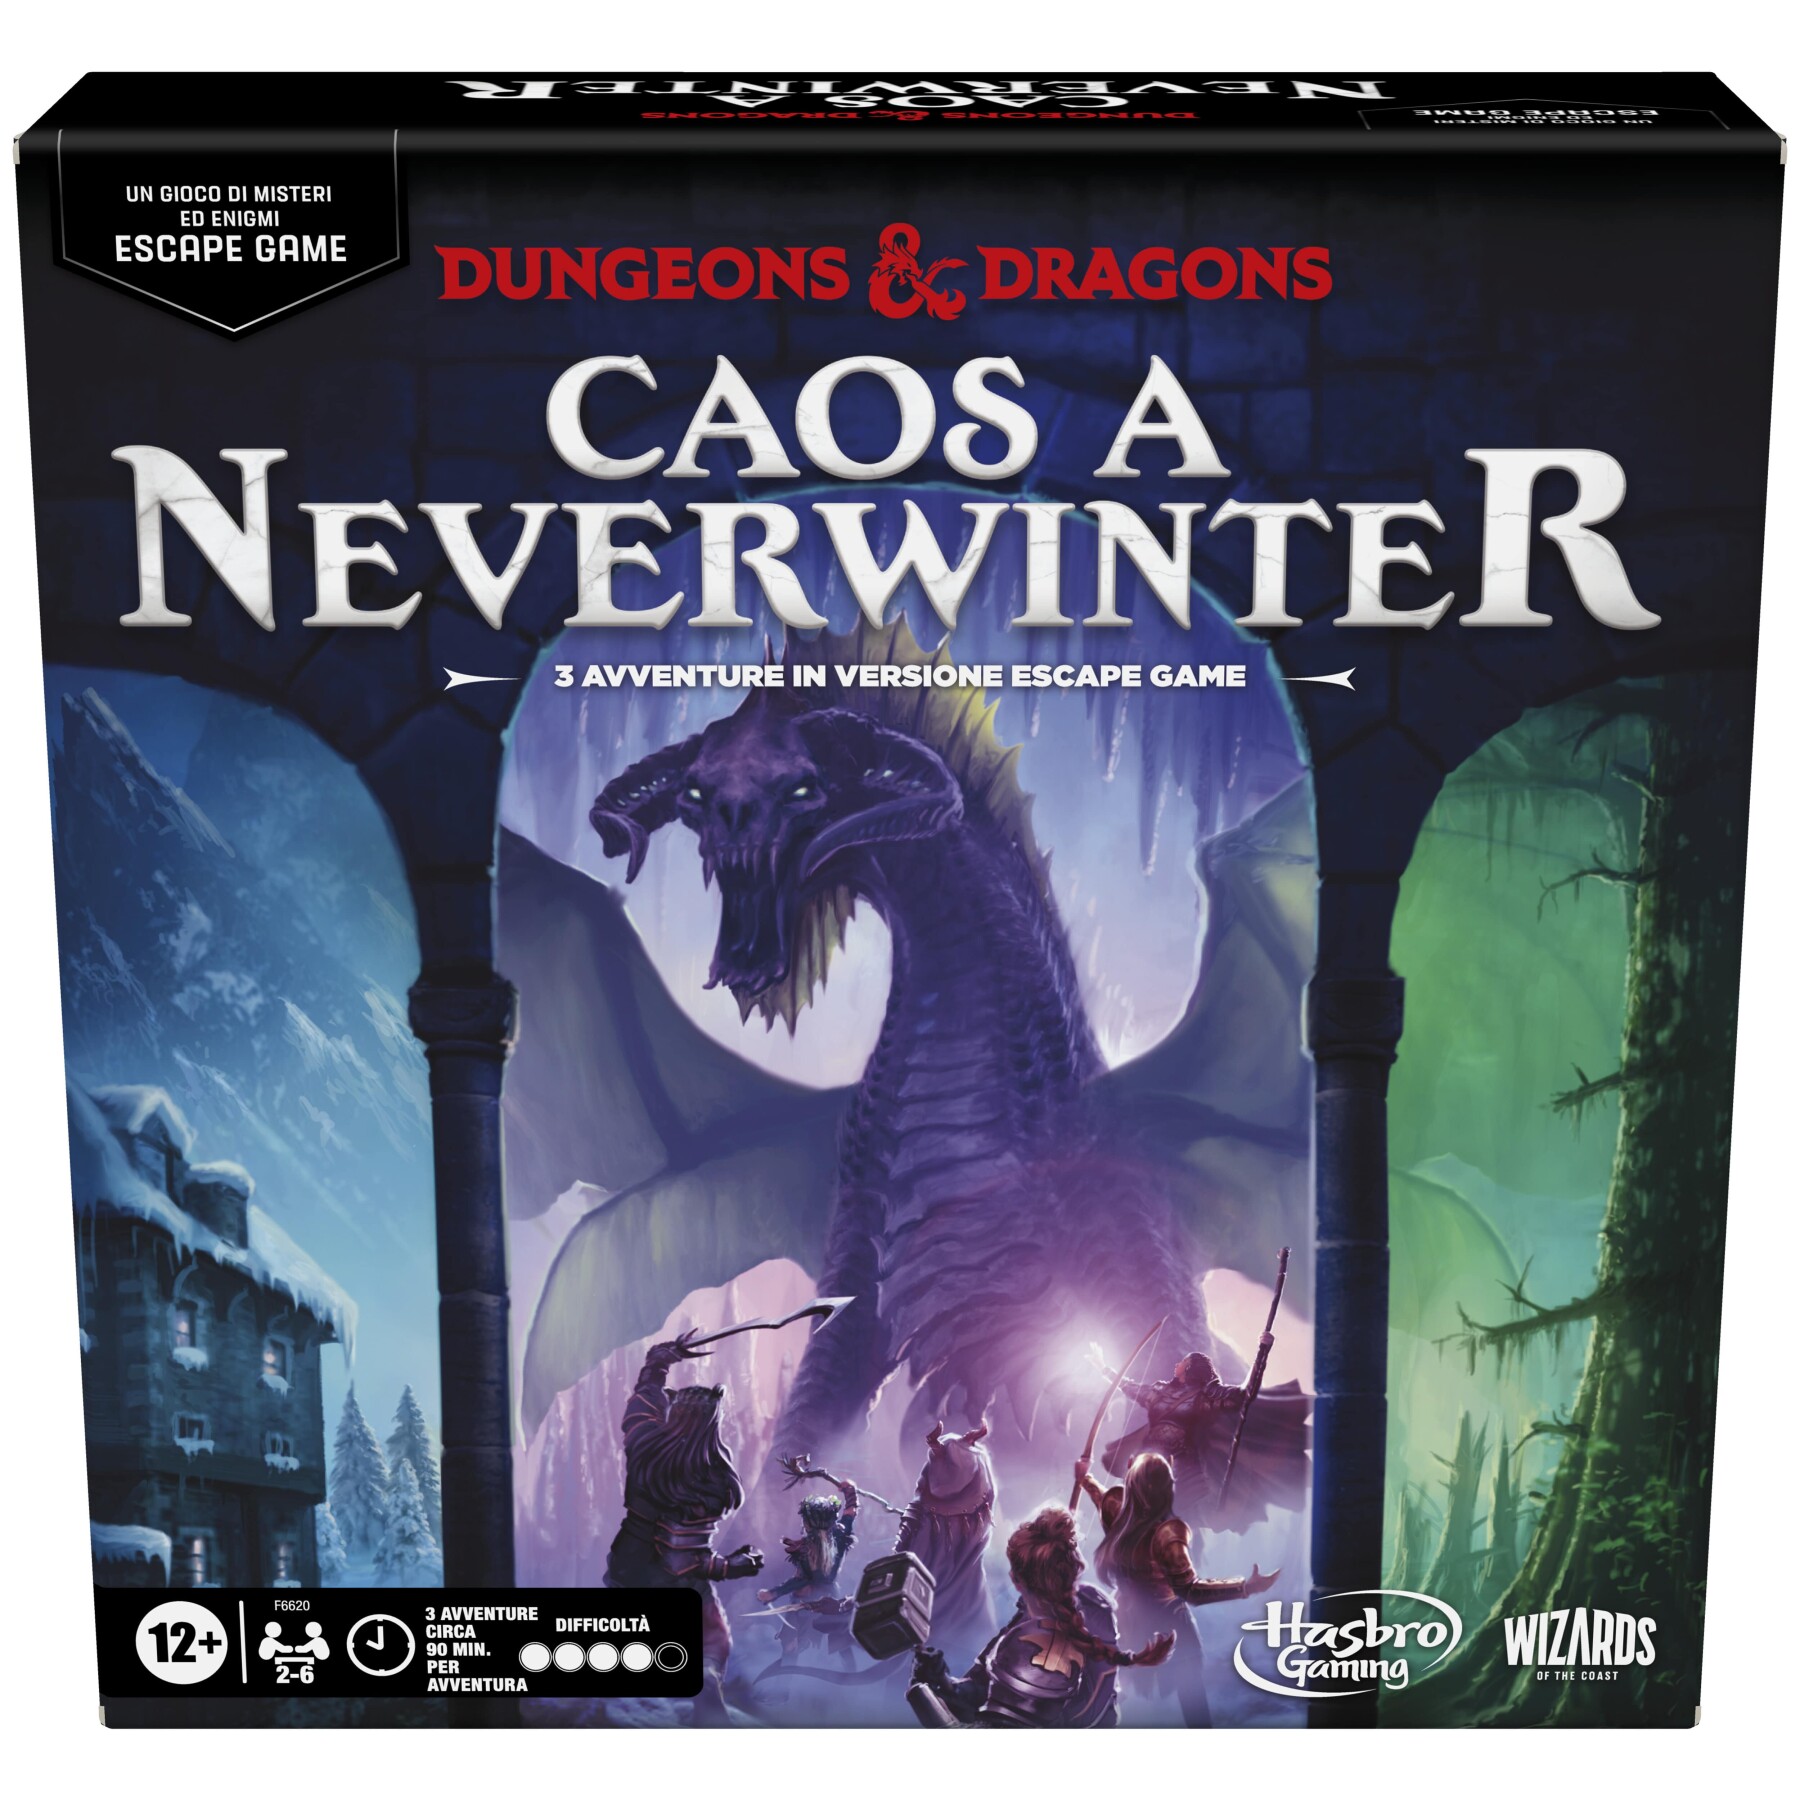 Dungeons & dragons: caos a neverwinter, un gioco di mistero escape game, evasione ed enigmi - HASBRO GAMING